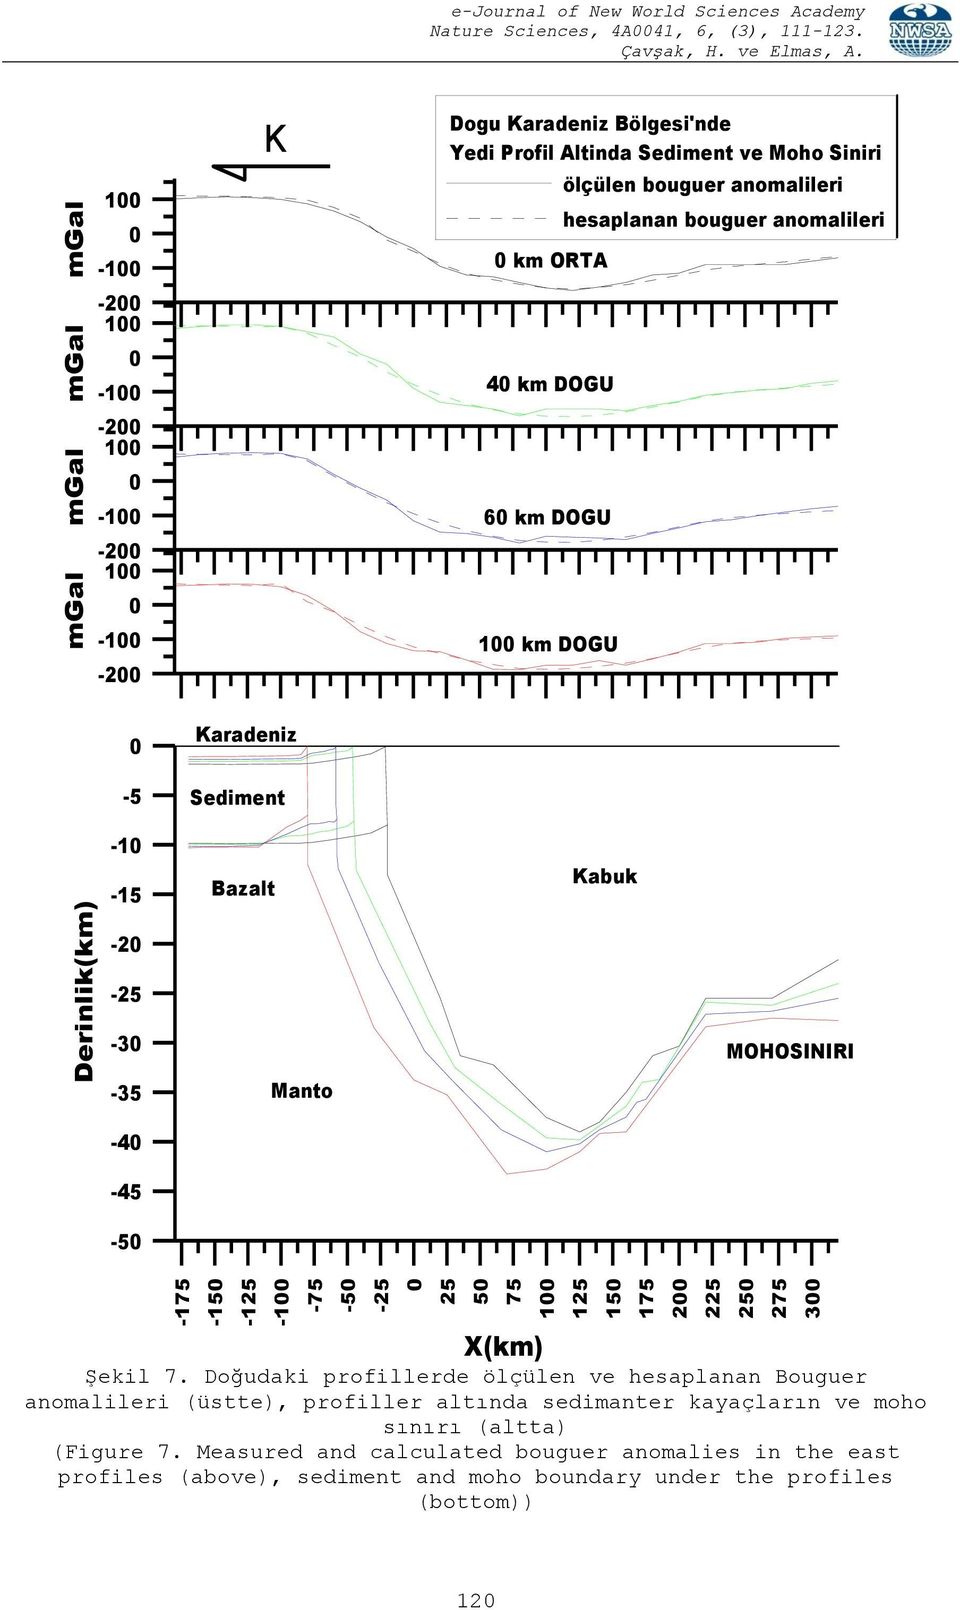 bouguer anomalileri -5-1 -15 Karadeniz Sediment Bazalt Kabuk -2-25 -3-35 -4-45 -5 Manto MOHOSINIRI X(km) Şekil 7.